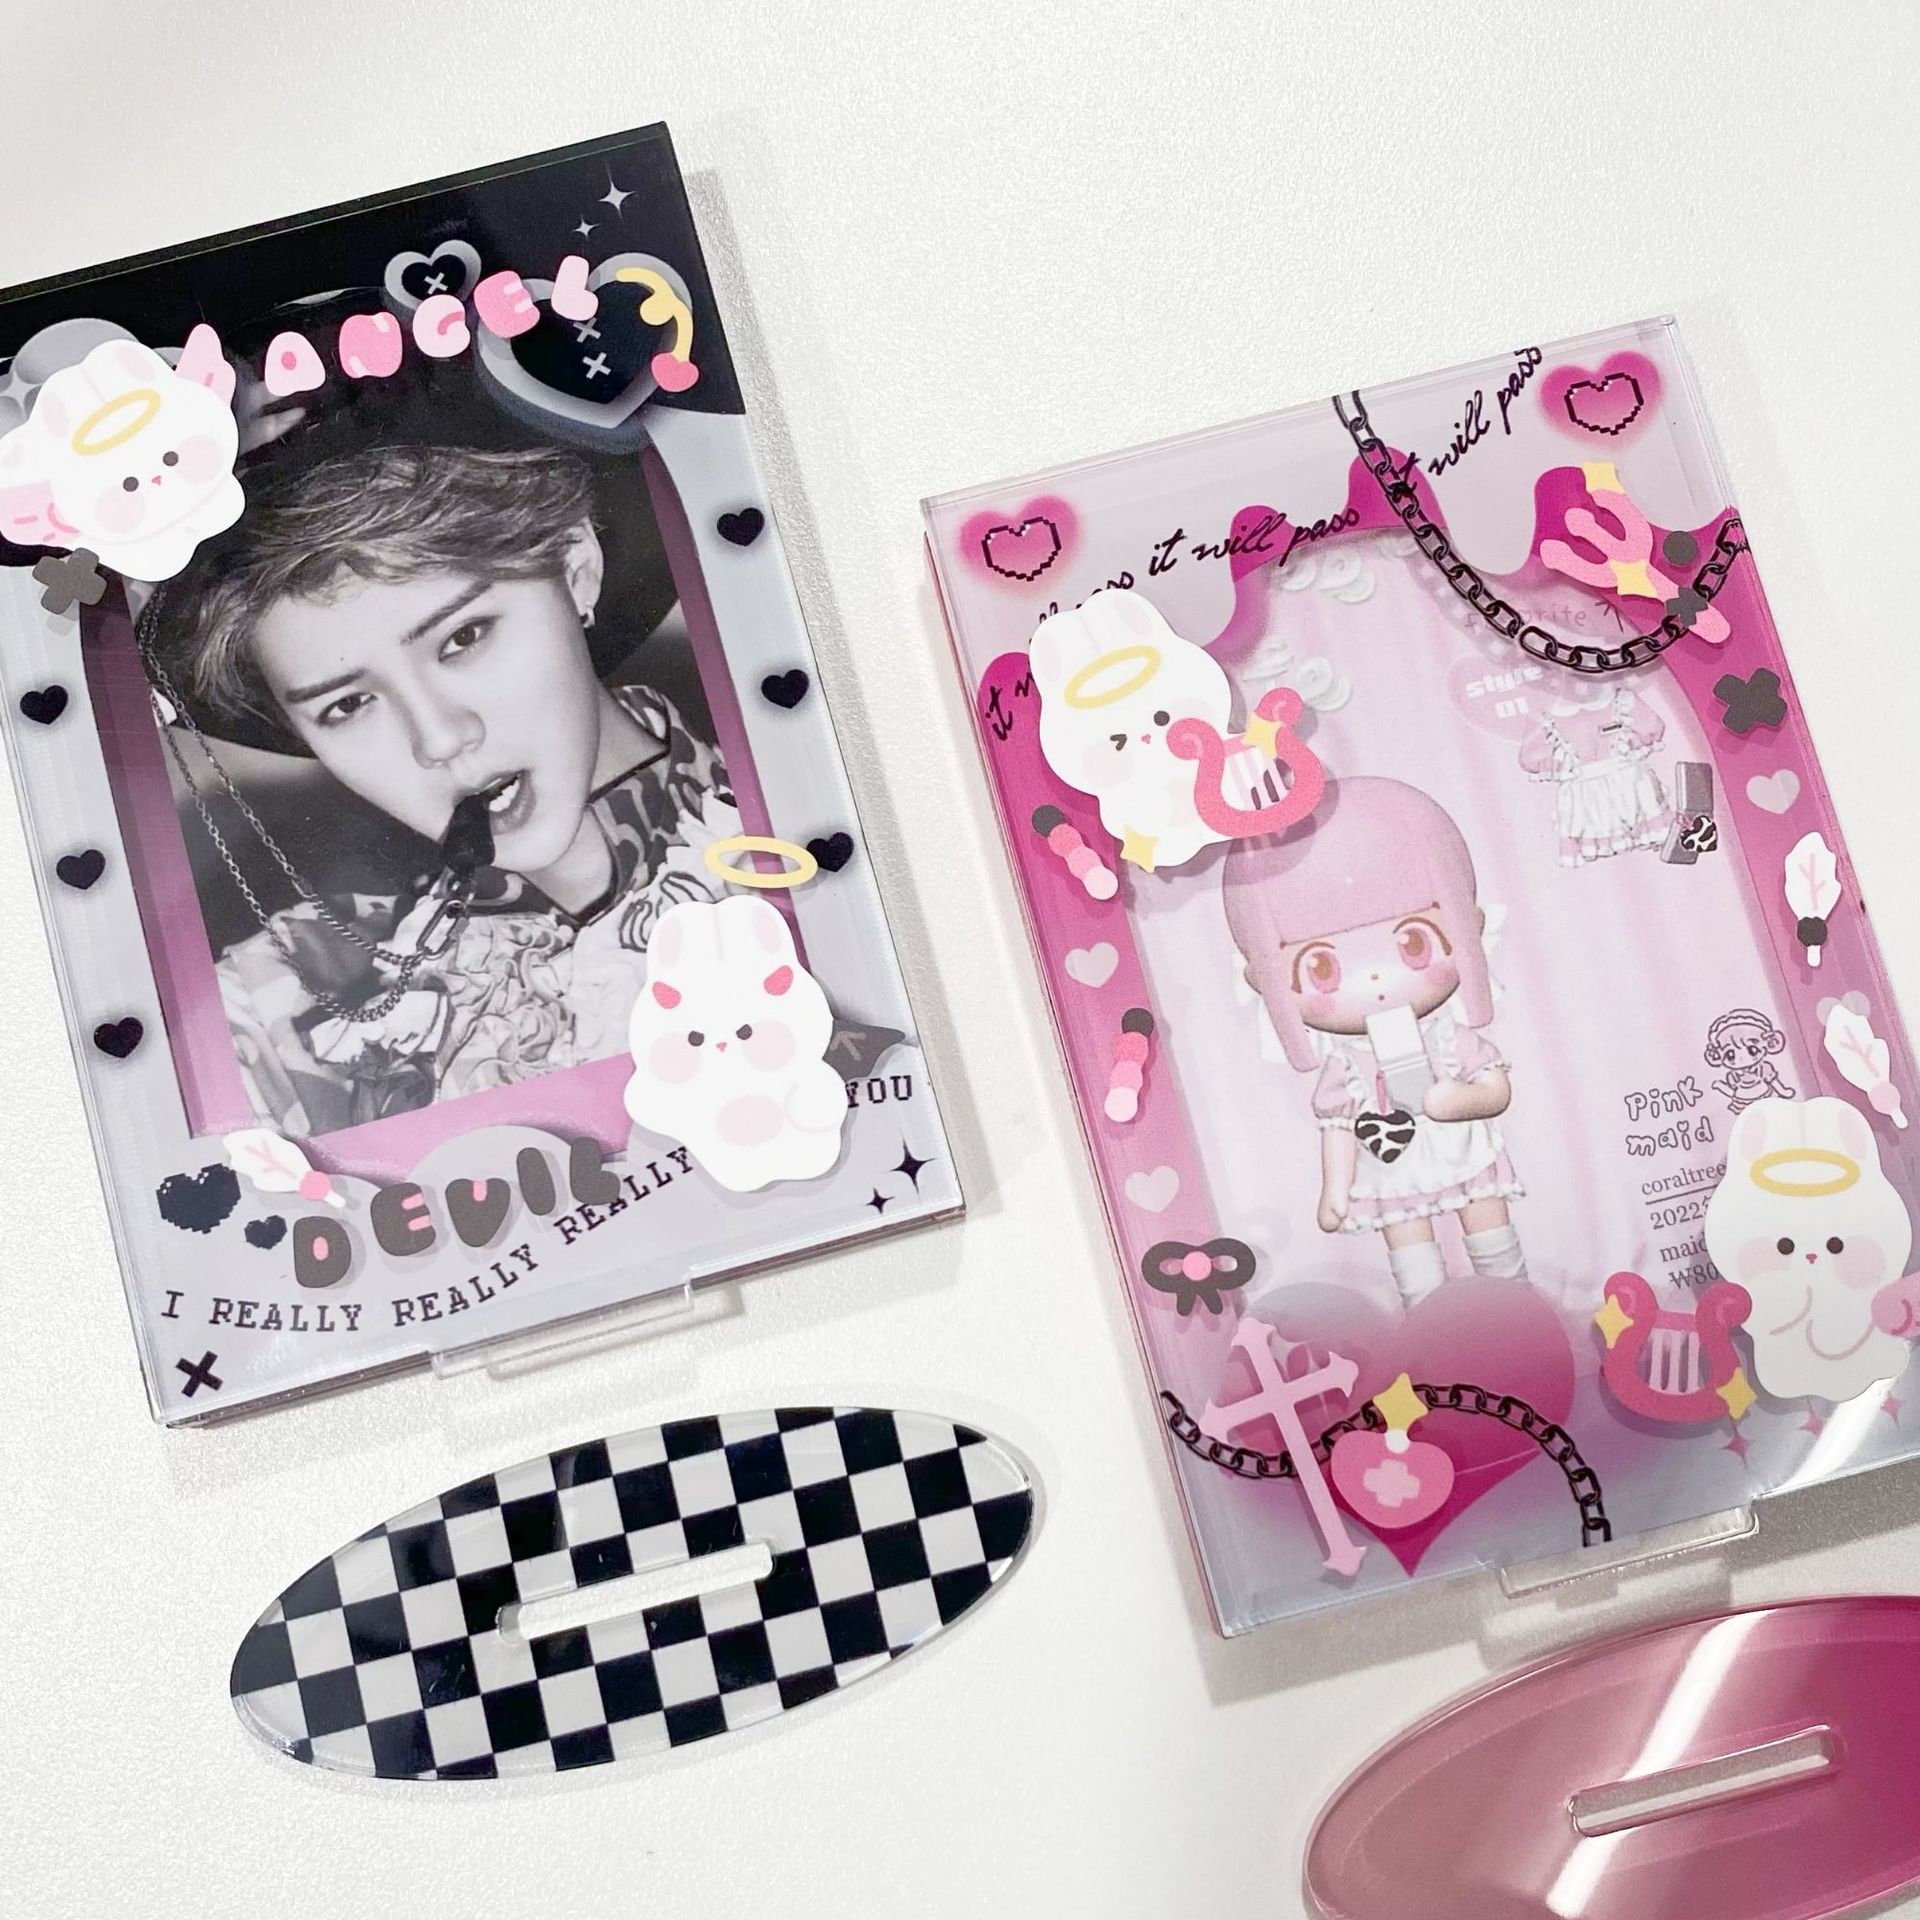 Kpop Photocard Deco Sticker Sheet, Kawaii Bunny Bear Card Making